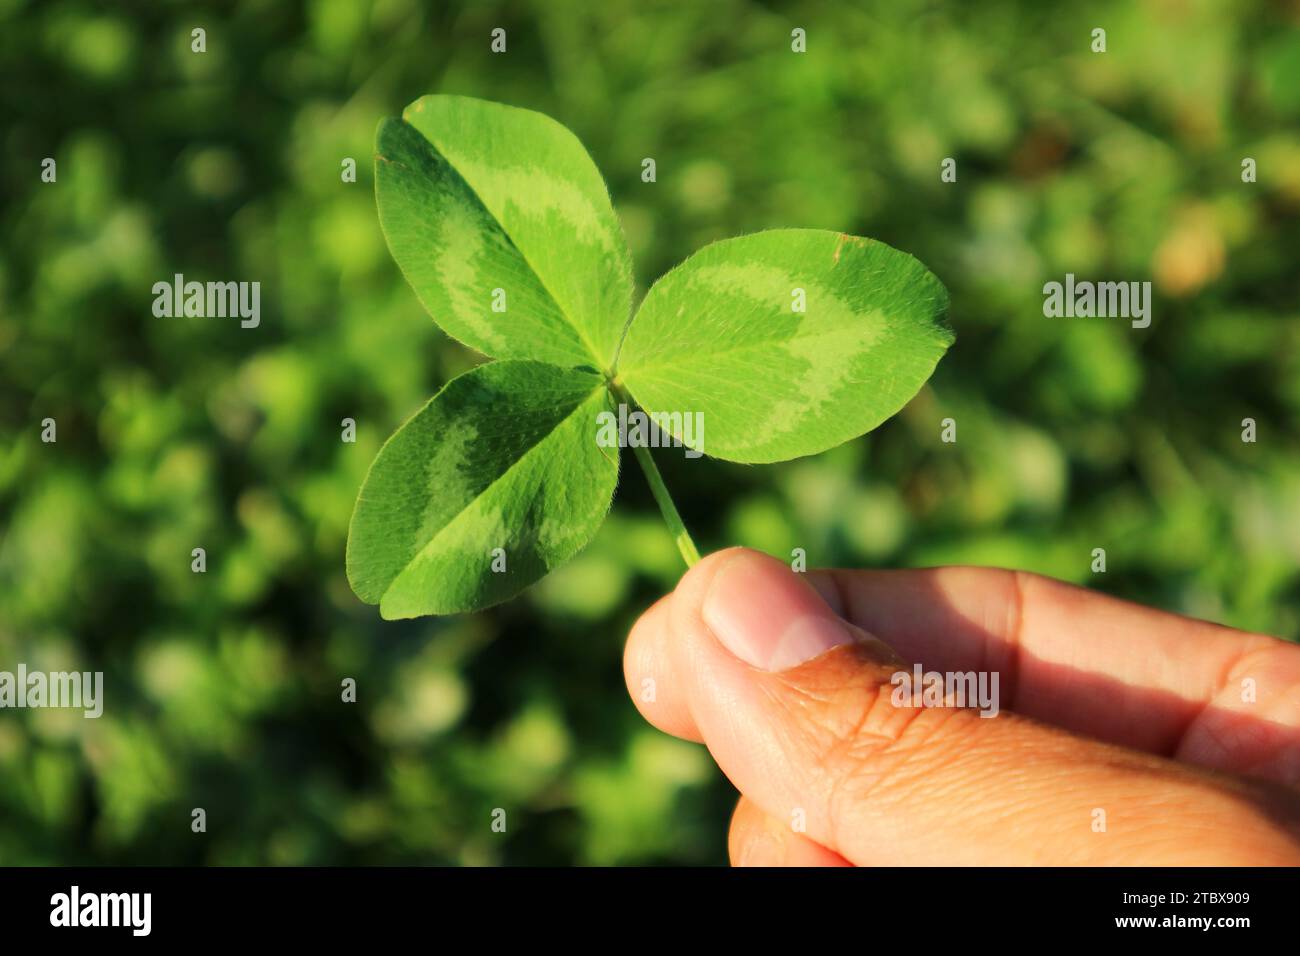 Nahaufnahme des lebendigen grünen Dreiblättrigen Kleeblatts in der Hand mit verschwommenem Kleeblatt-Feld im Hintergrund Stockfoto